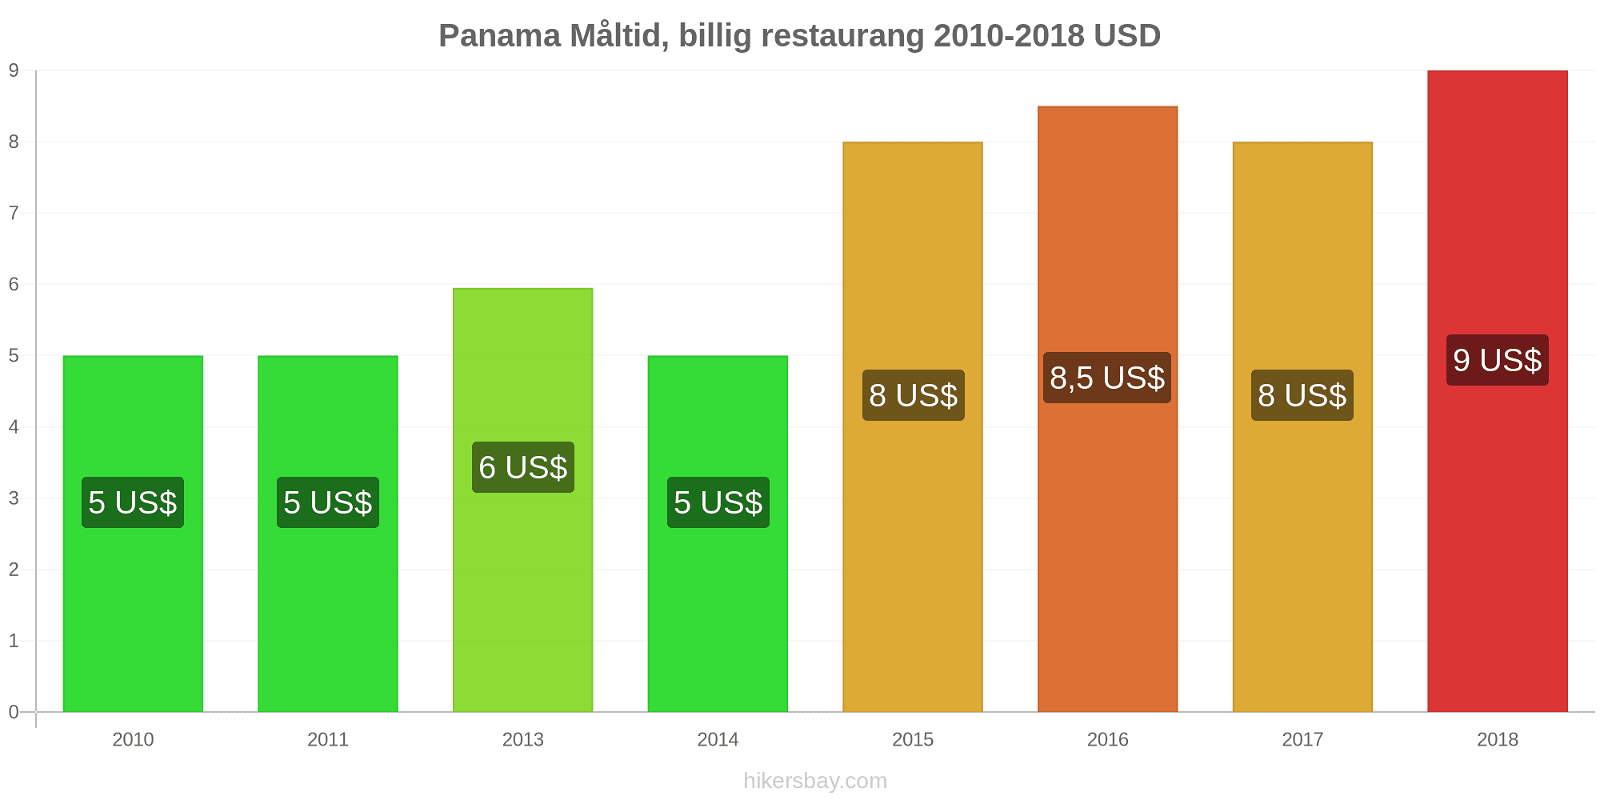 Panama prisändringar Måltid i en billig restaurang hikersbay.com